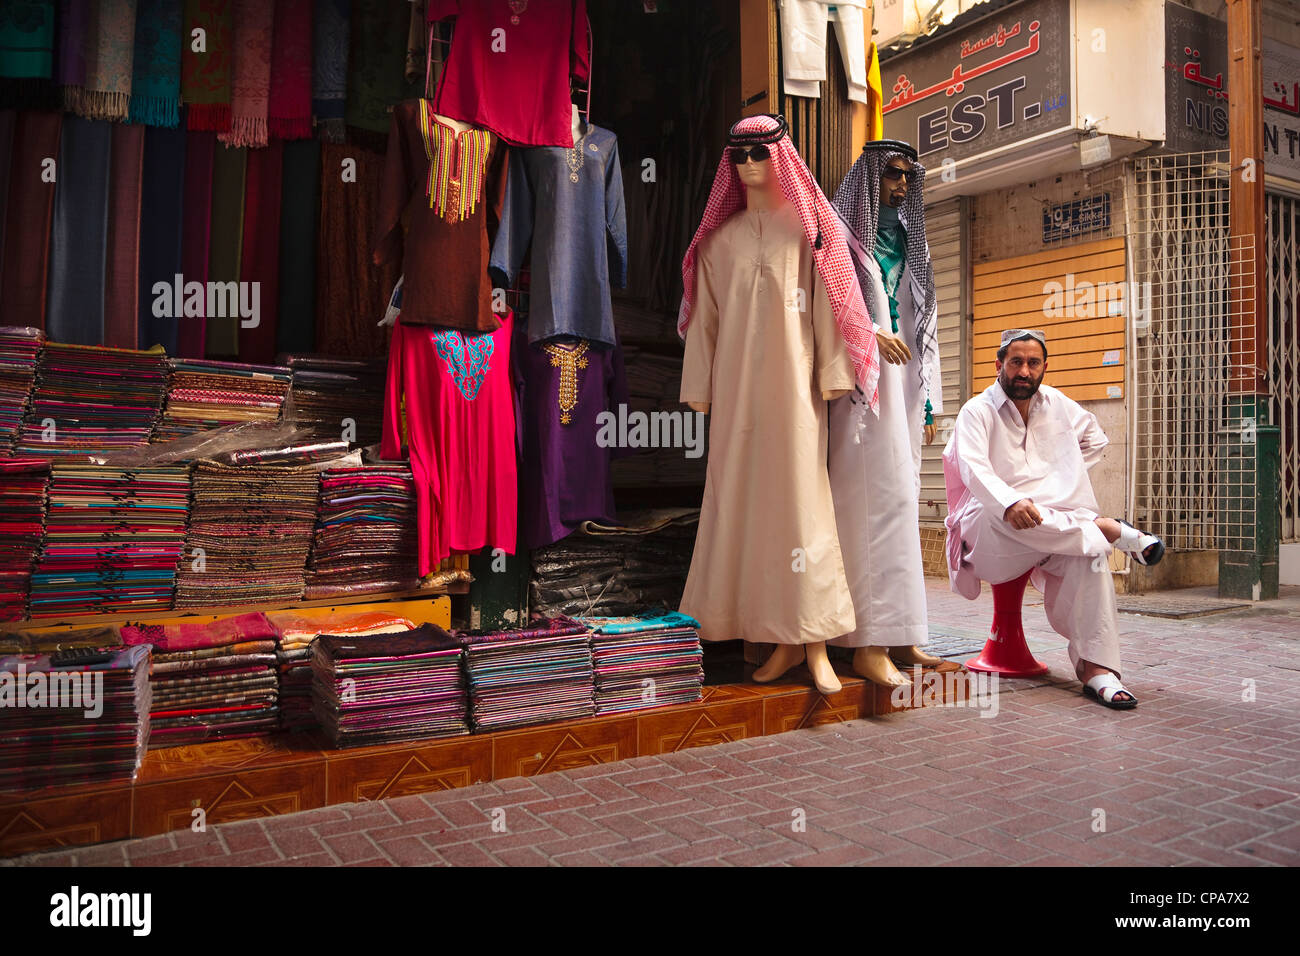 Tienda tradicional árabe fotografías e imágenes de alta resolución - Alamy